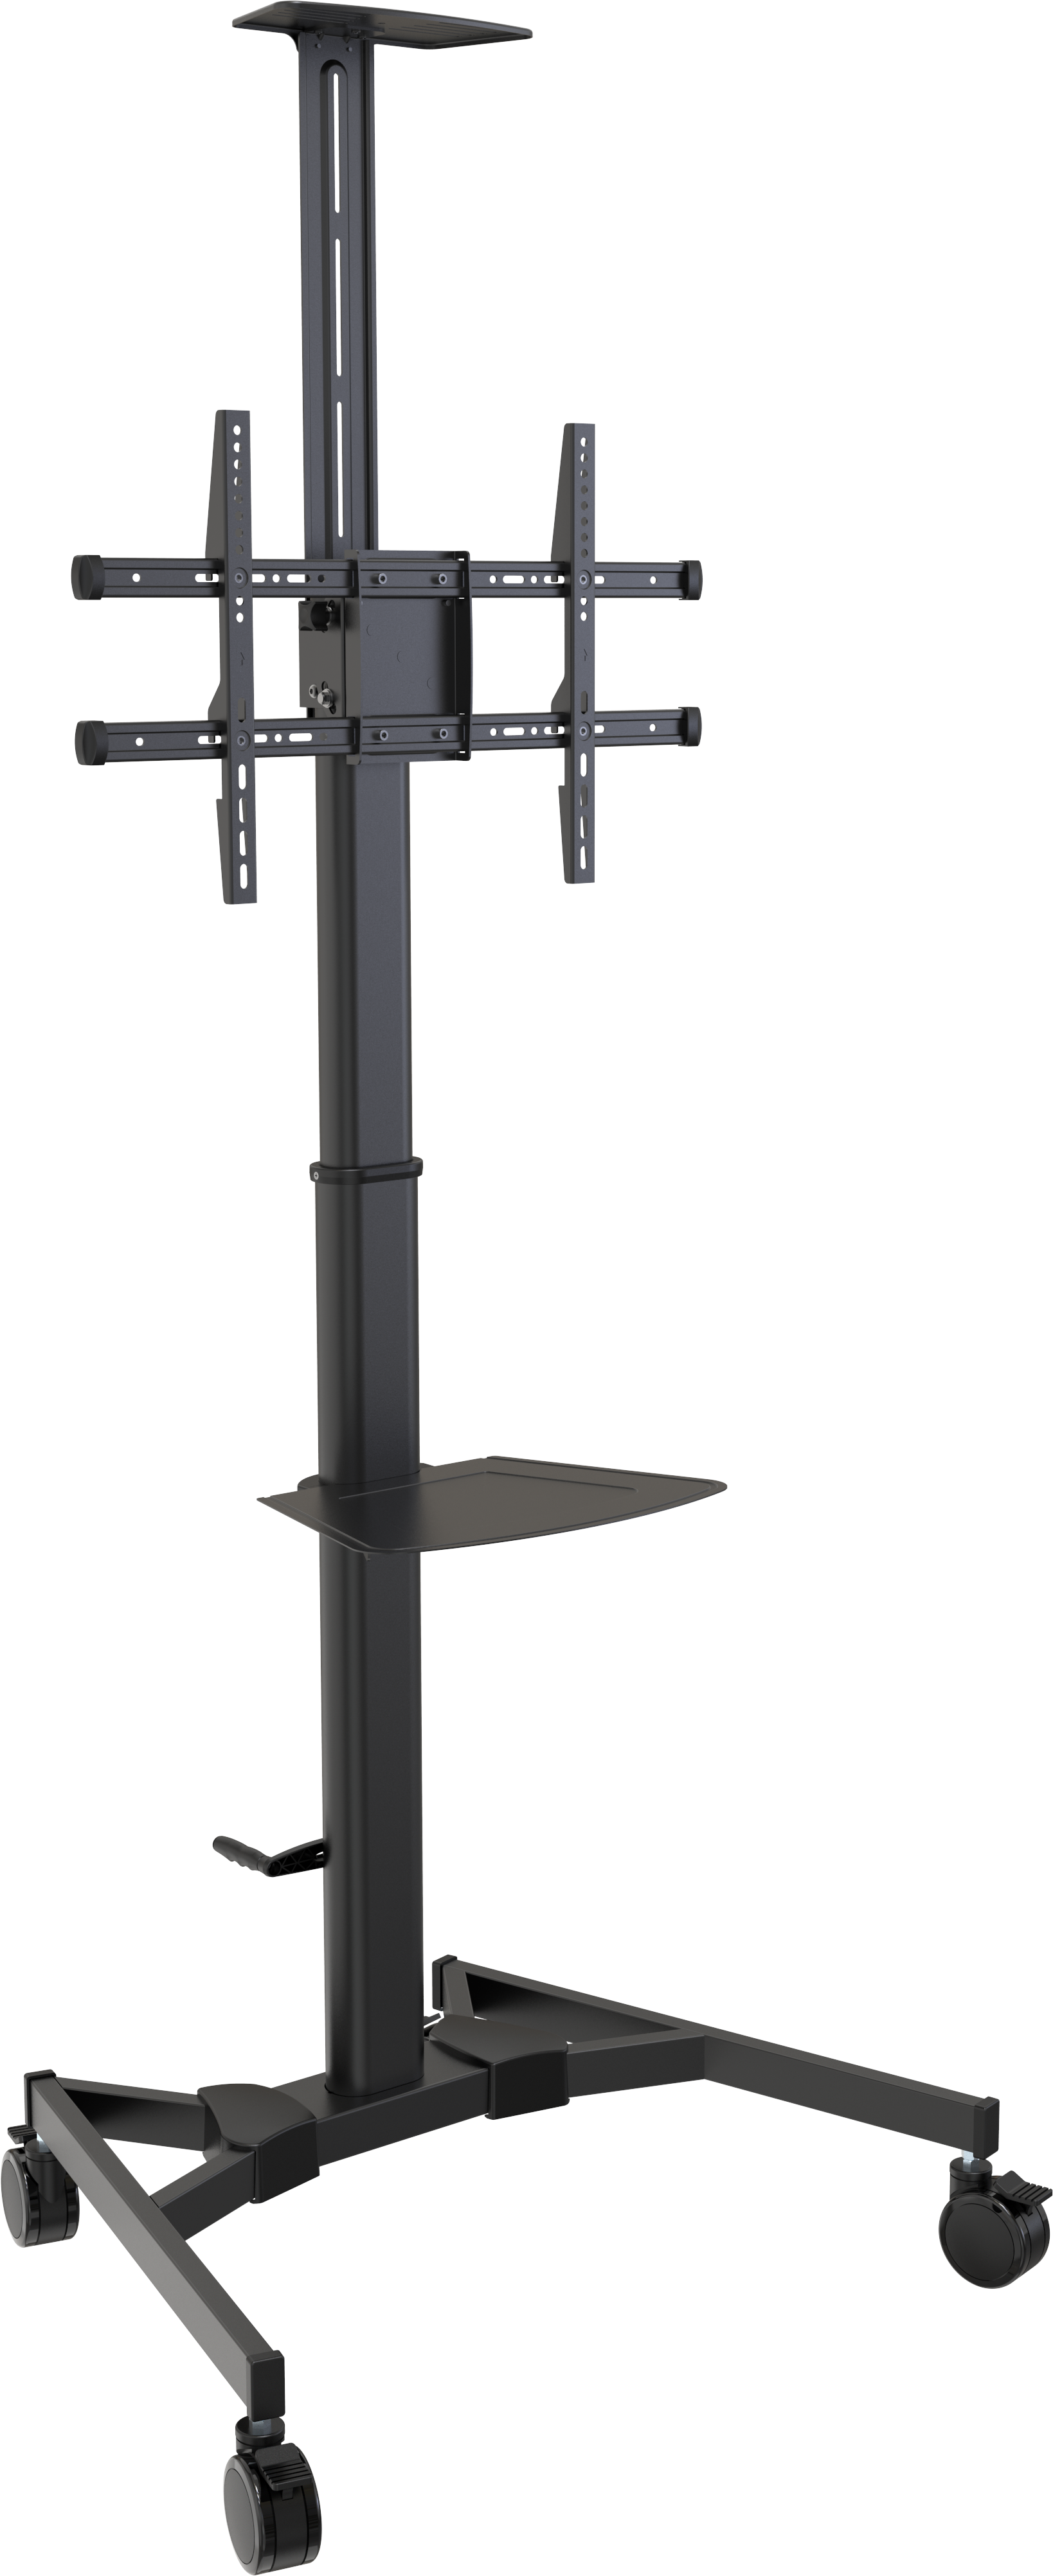 An image showing Carrinho para ecrãs ajustável em altura – 45 kg